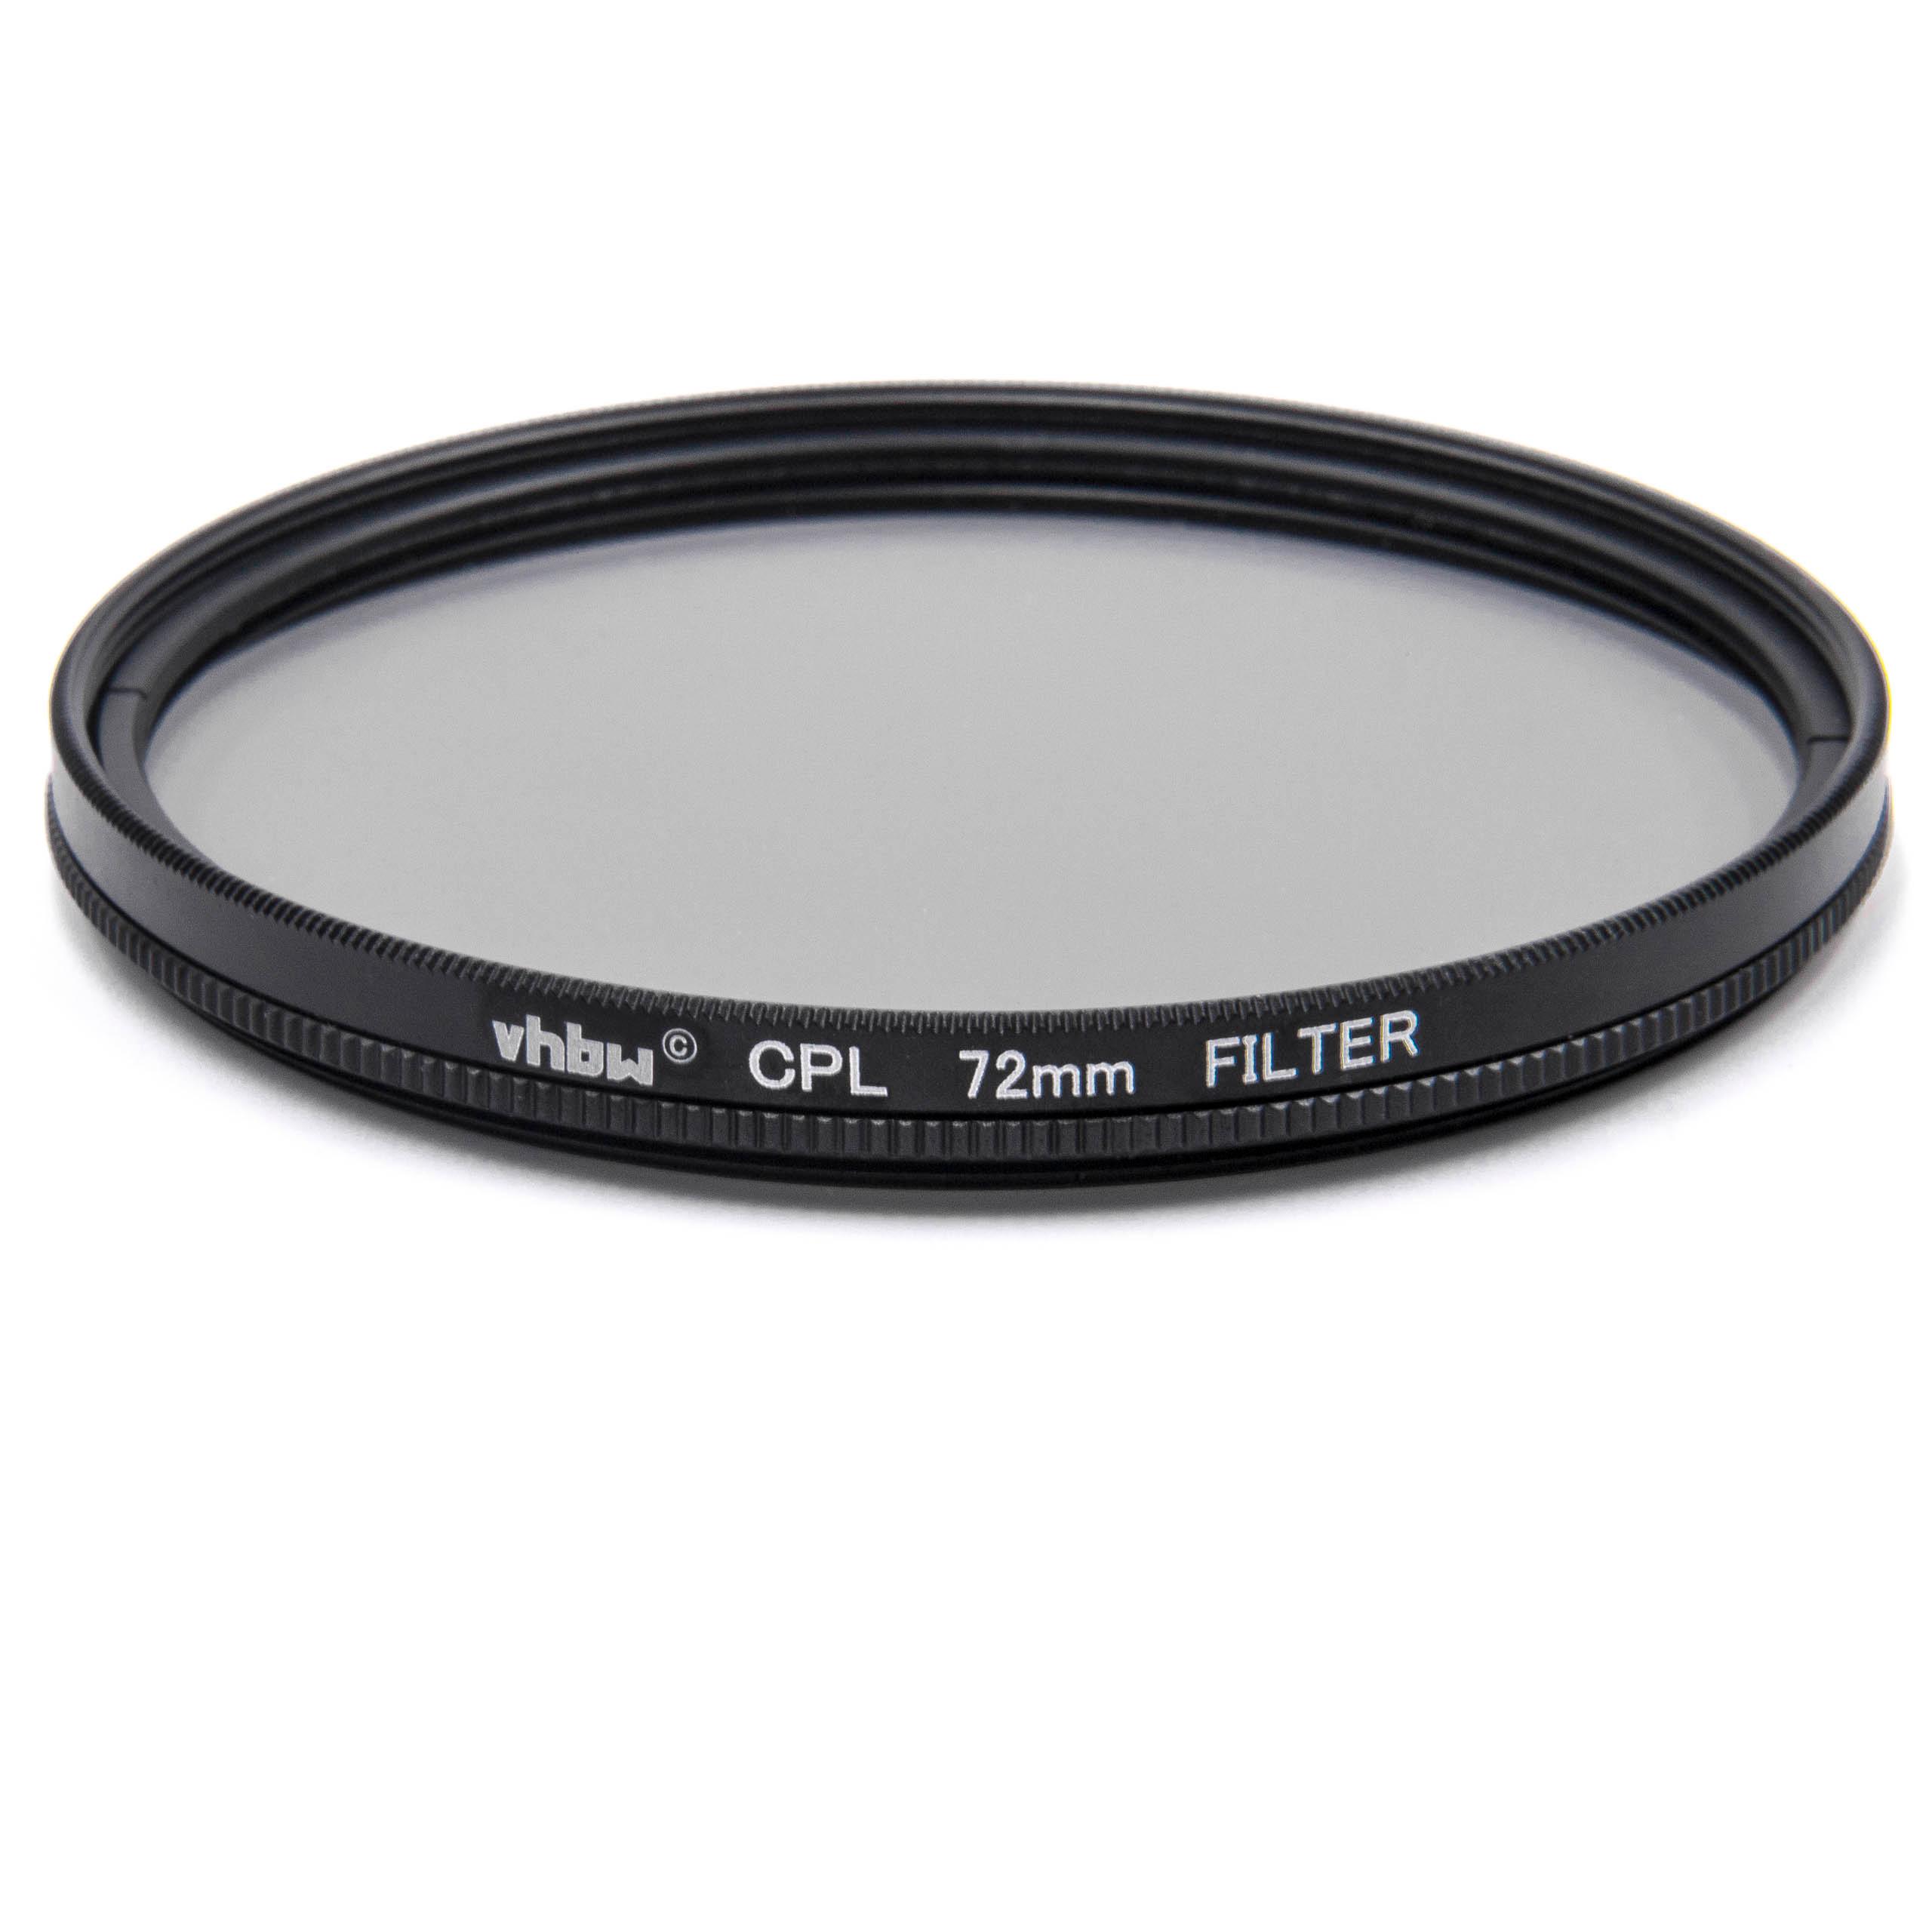 Filtro polarizador para objetivos y cámaras con rosca de filtro de 72 mm - Filtro CPL